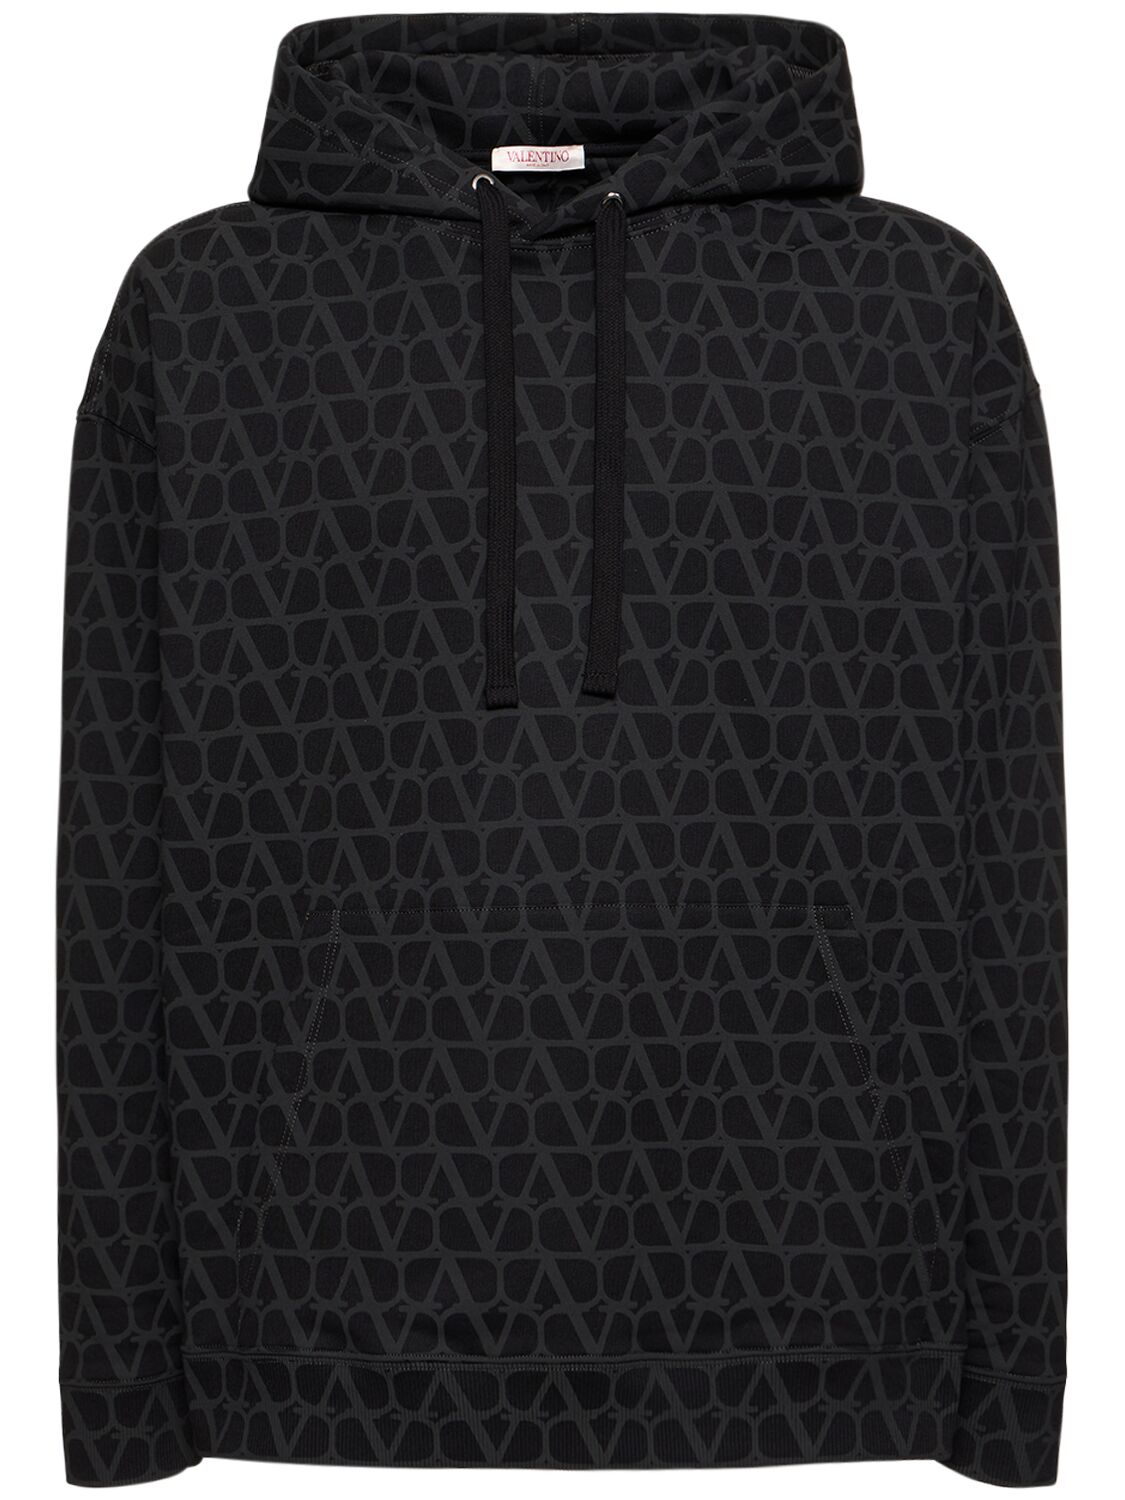 Image of Toile Iconographe Hooded Sweatshirt